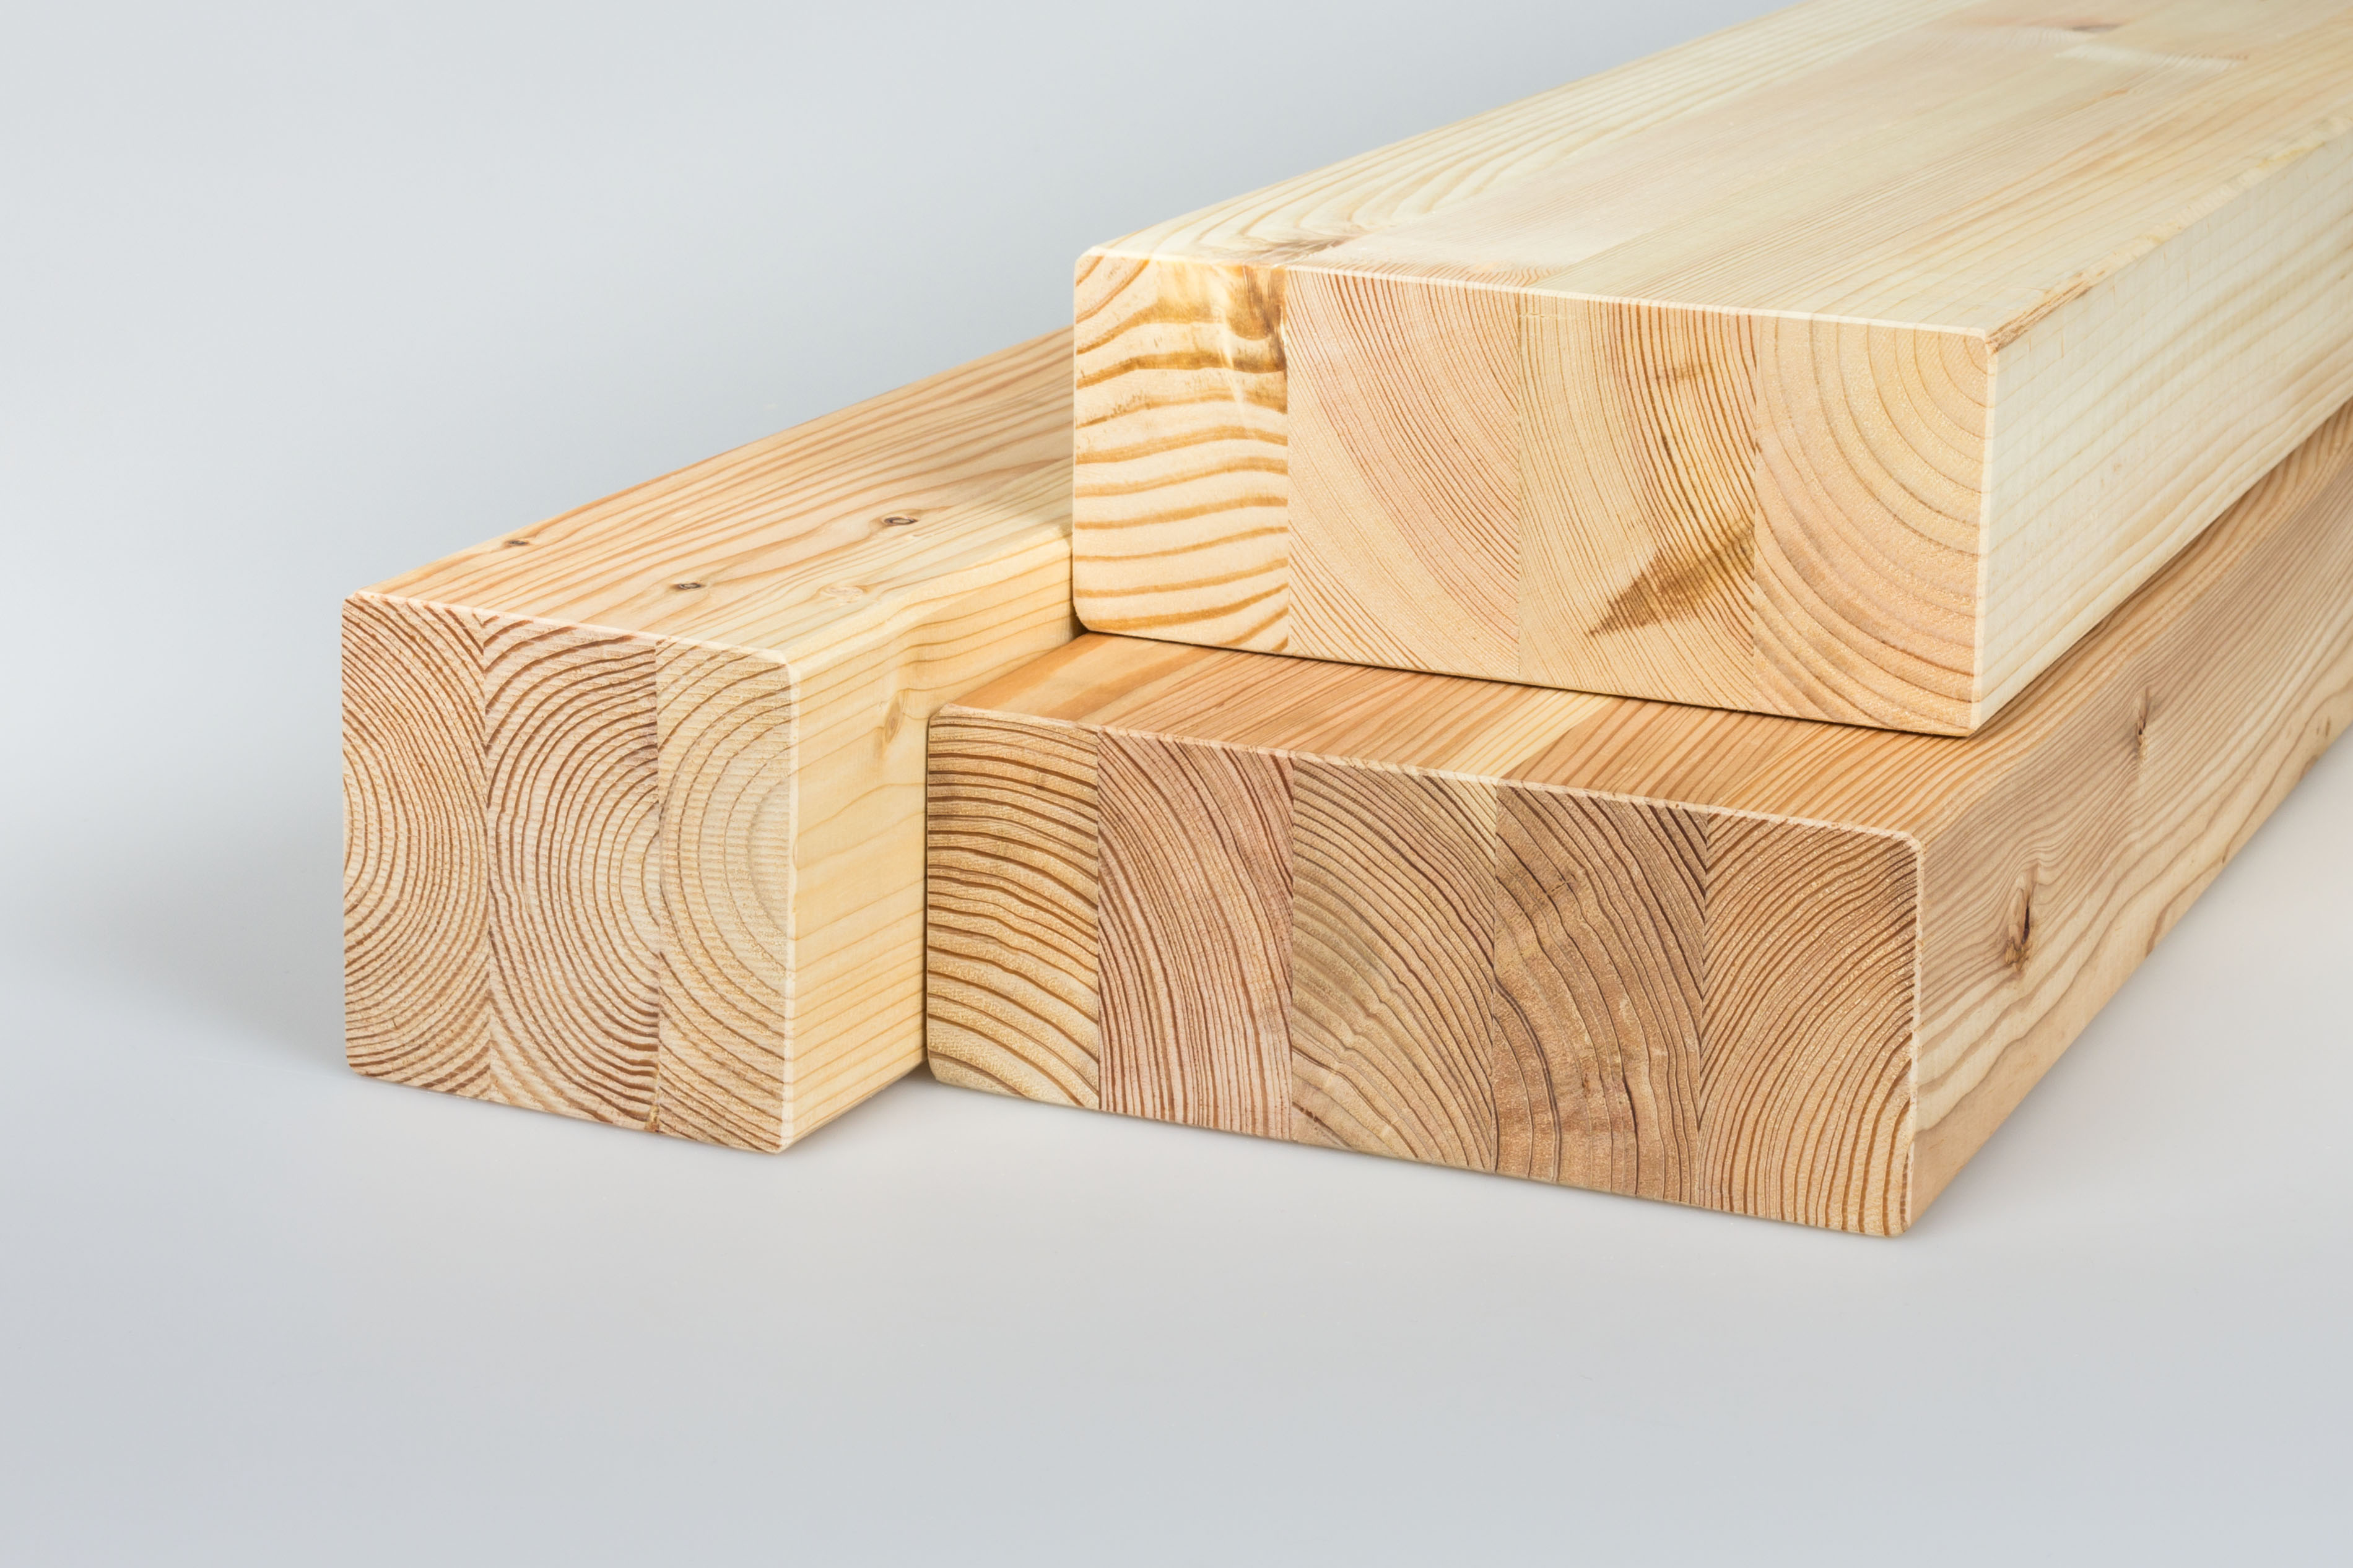 Glulam – Glued laminated timber